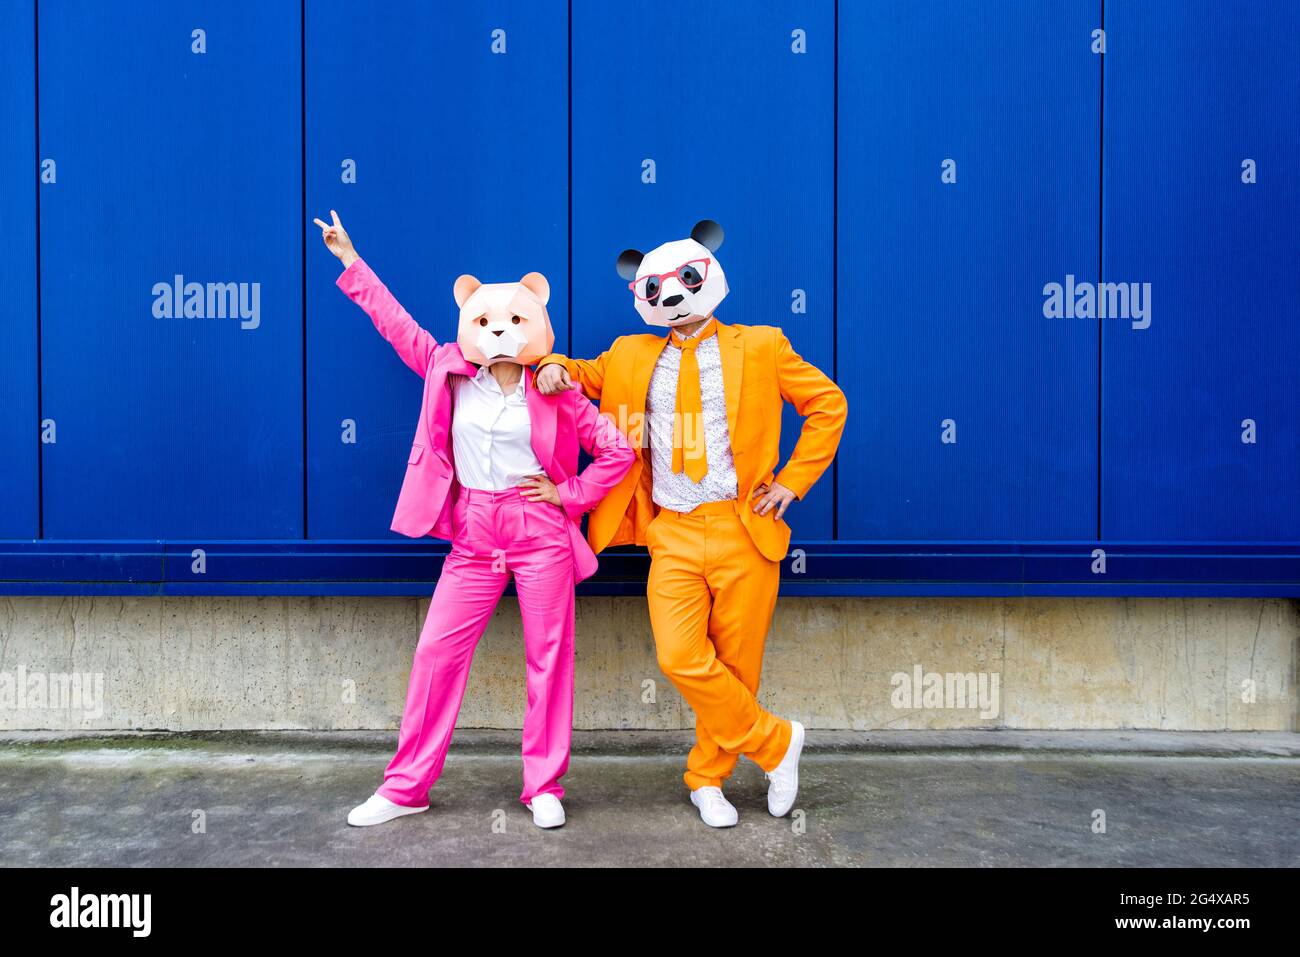 Homme et femme portant des costumes vibrants et des masques d'ours debout ensemble contre le mur bleu Banque D'Images